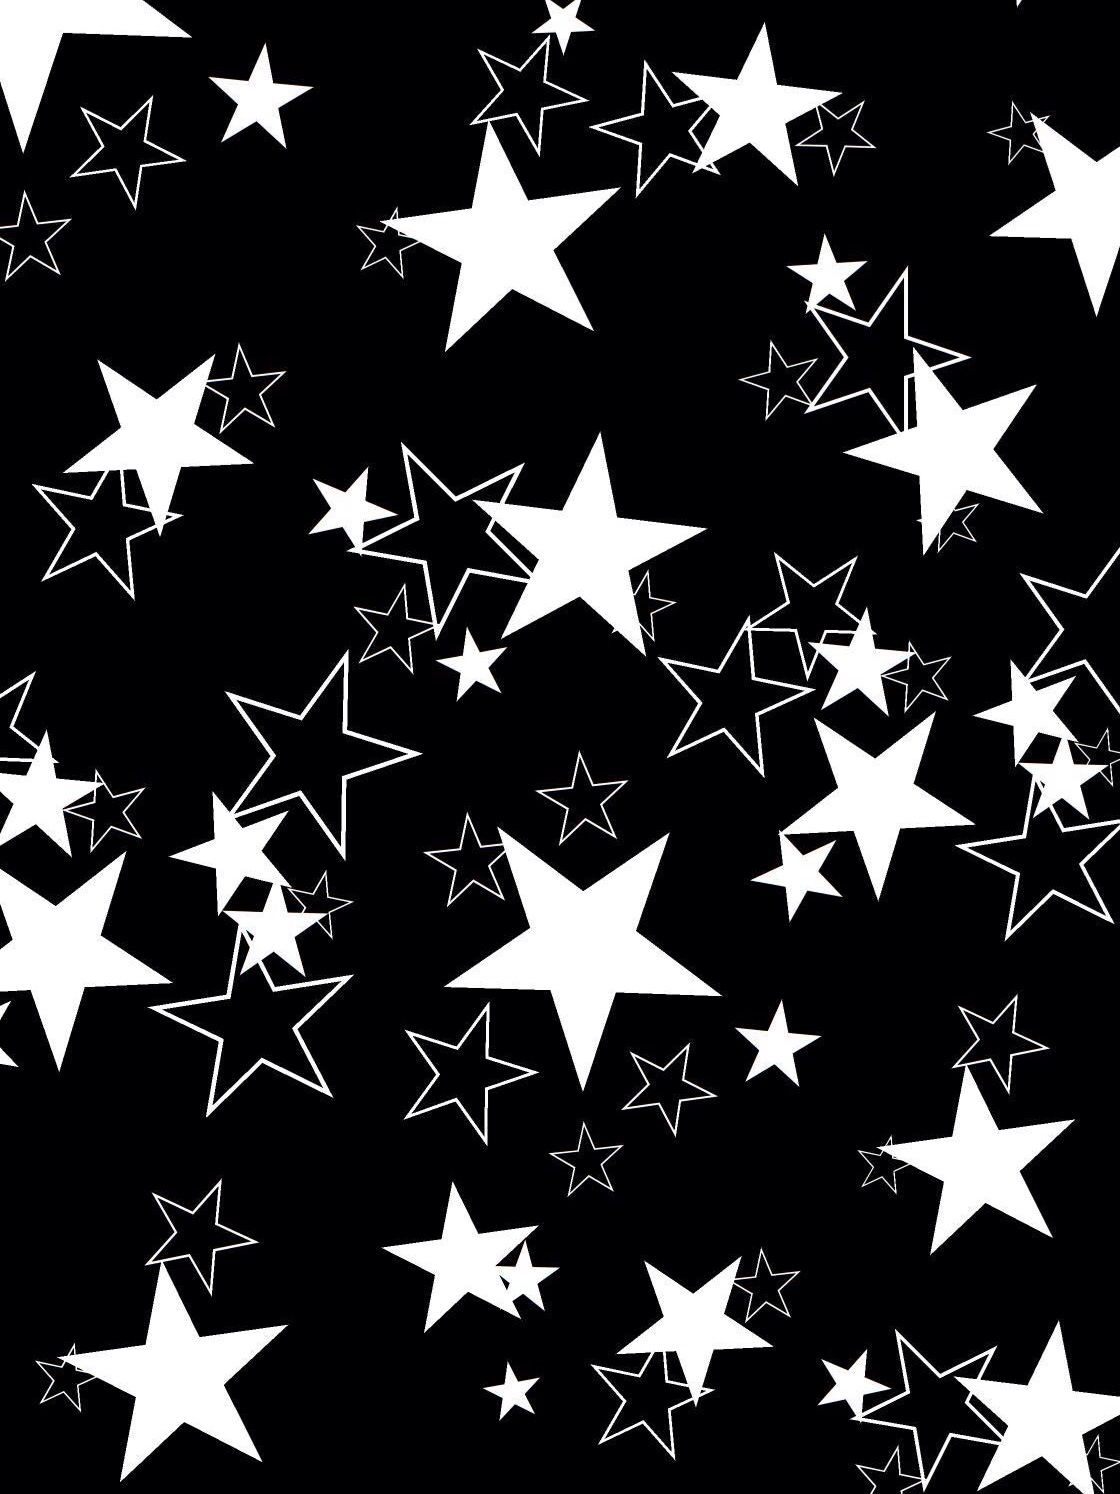 Black White Stars Wallpaper. Star Wallpaper, IPhone Wallpaper Sky, Black And White Stars